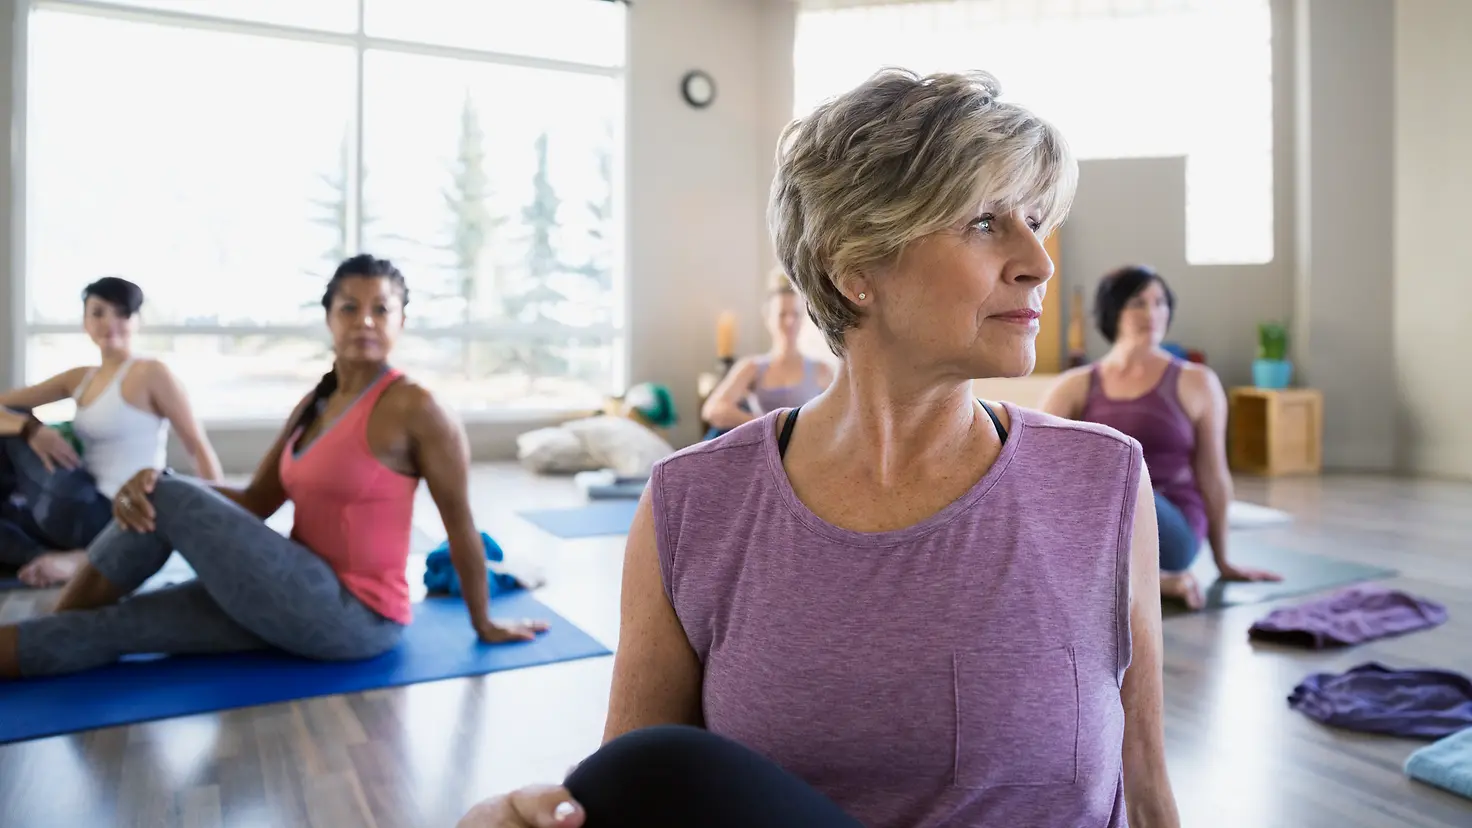 Zu sehen sind Seniorinnen auf Yogamatten